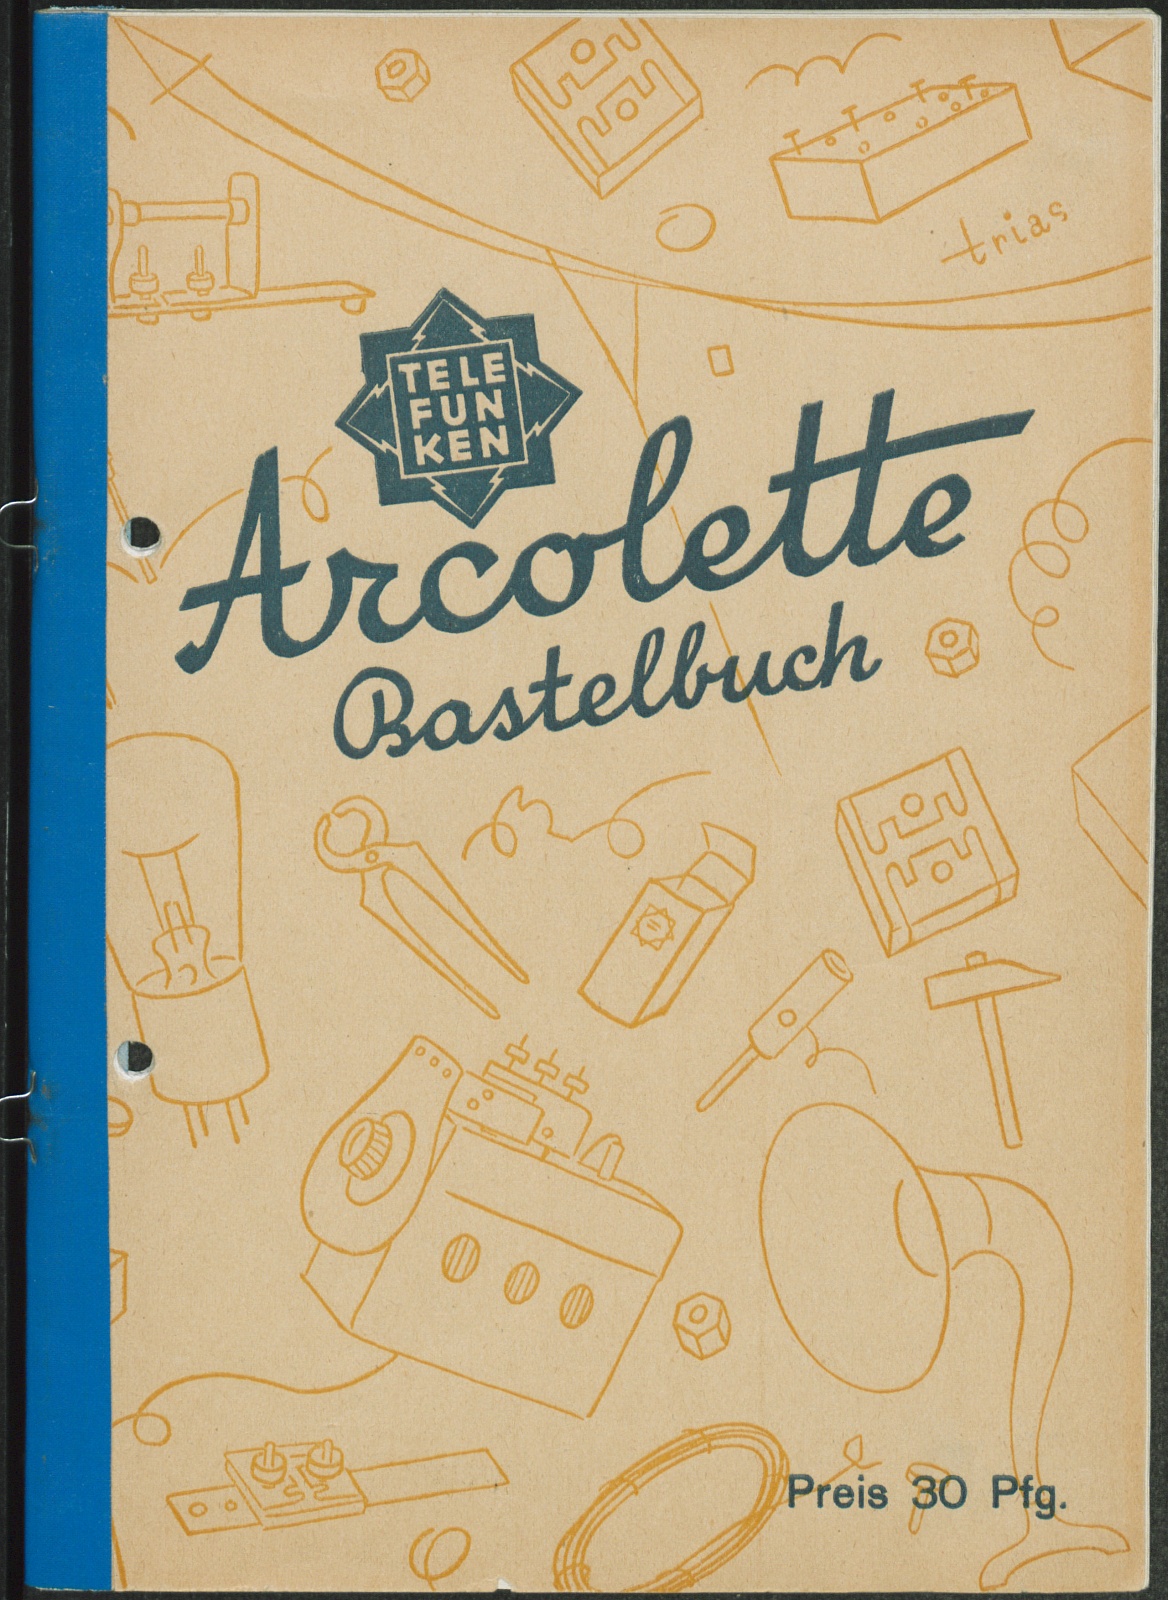 Bedienungsanleitung: Telefunken Arcolette Bastelbuch : Preis 30 Pfg. (Stiftung Deutsches Technikmuseum Berlin CC0)